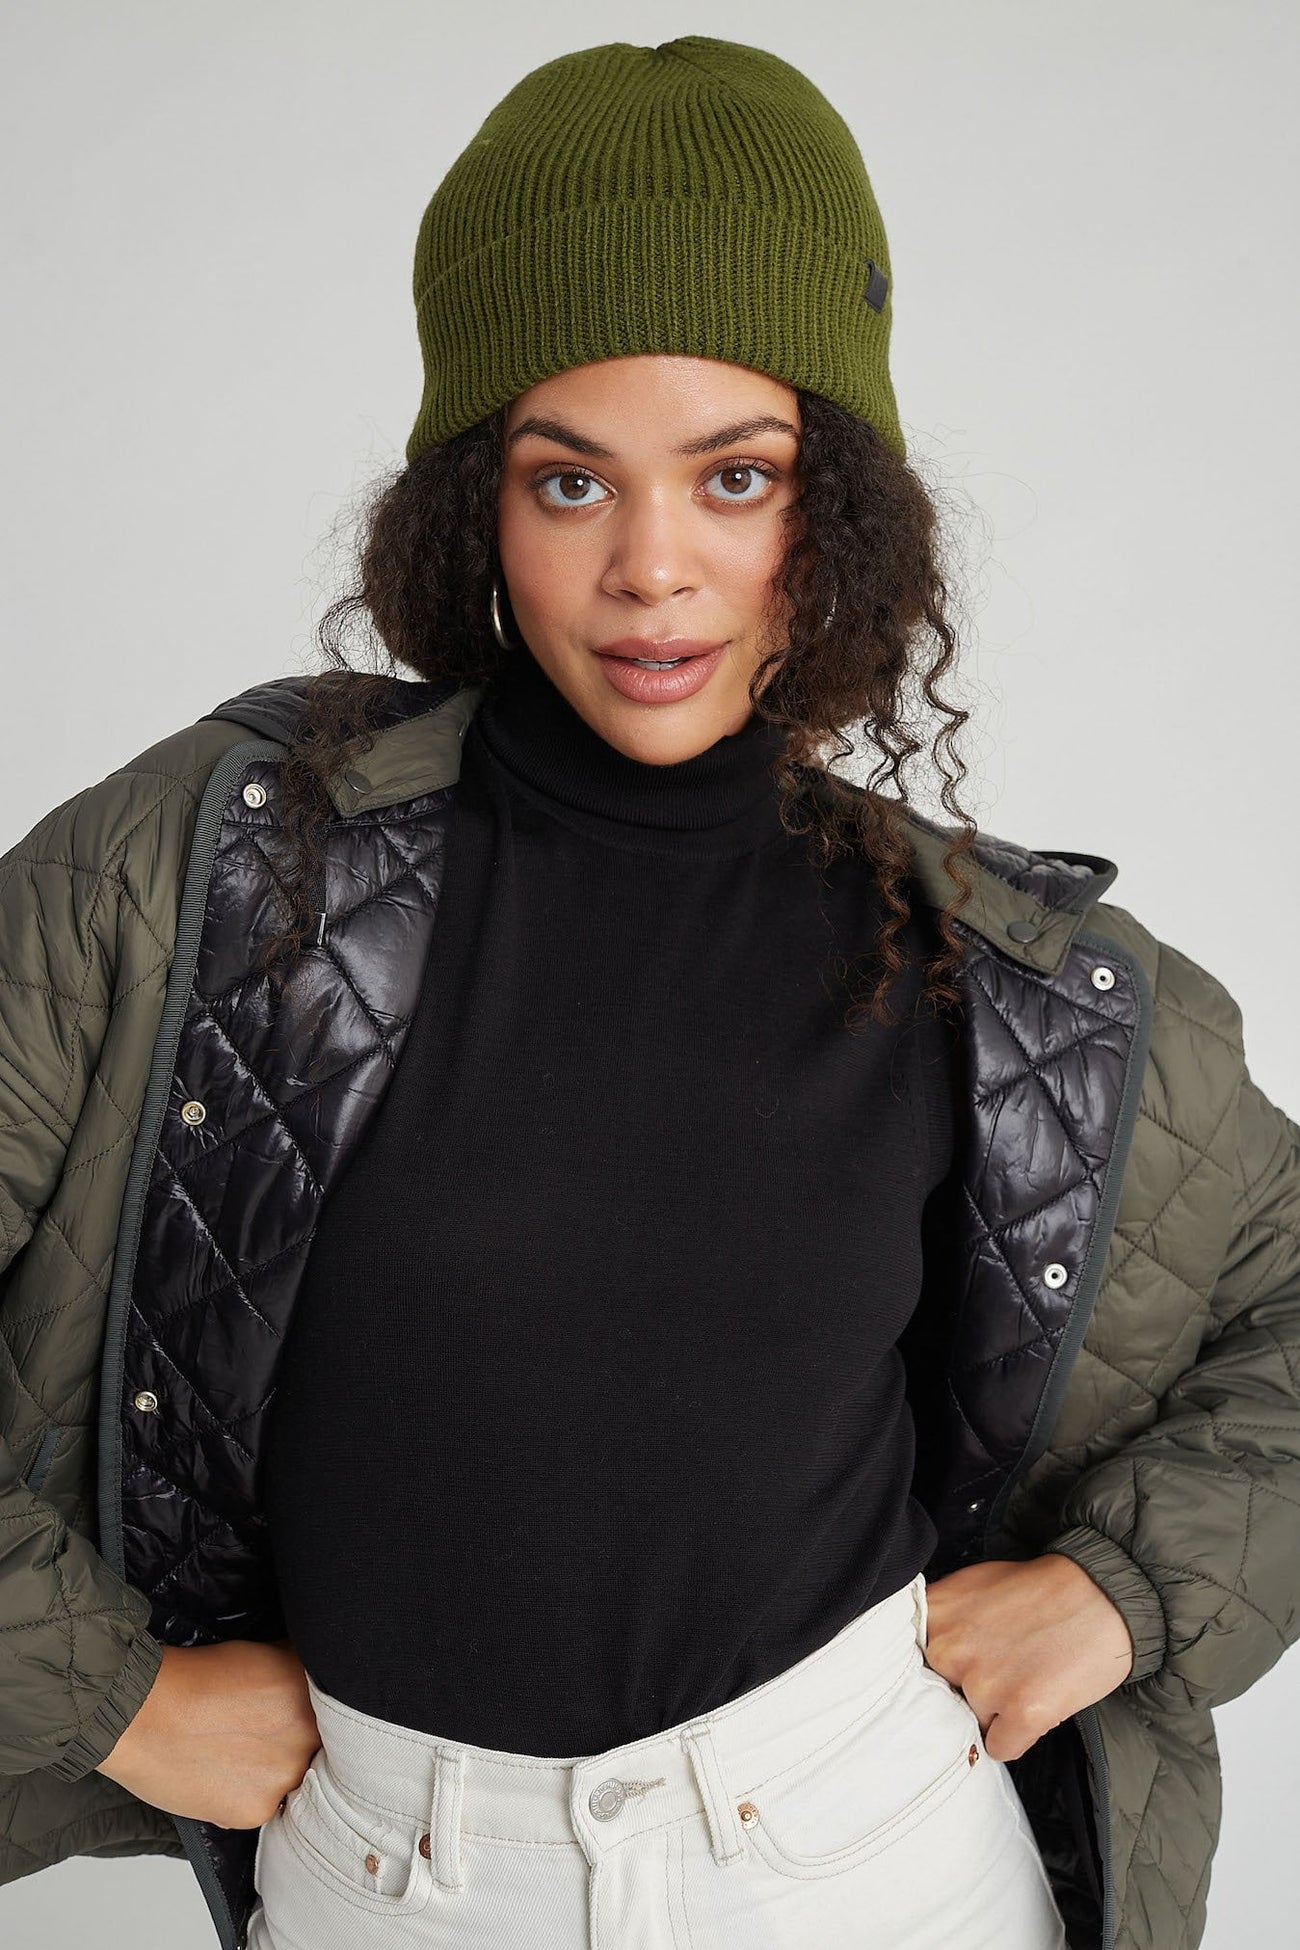 20 Best Warm Winter Hats for Women in 2022 - Stylish, Cozy Beanies